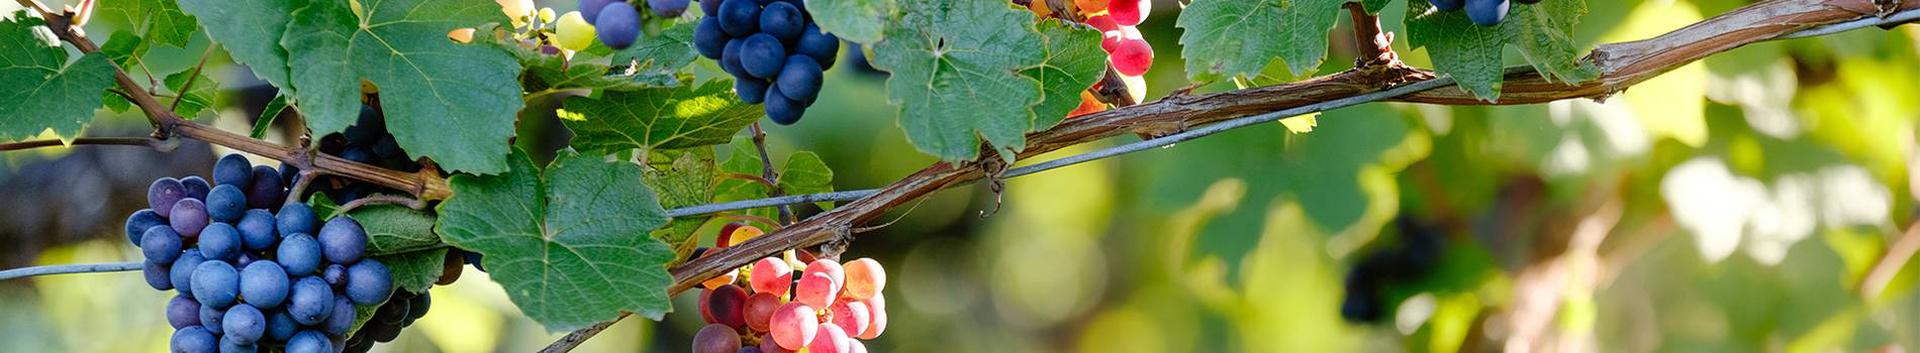 Suurim mainega ettevõte PRUULI-KASKA TALU FIE, maineskoor 350, aktiivseid äriseoseid 1. Tegutseb peamiselt valdkonnas: Viinamarjakasvatus.